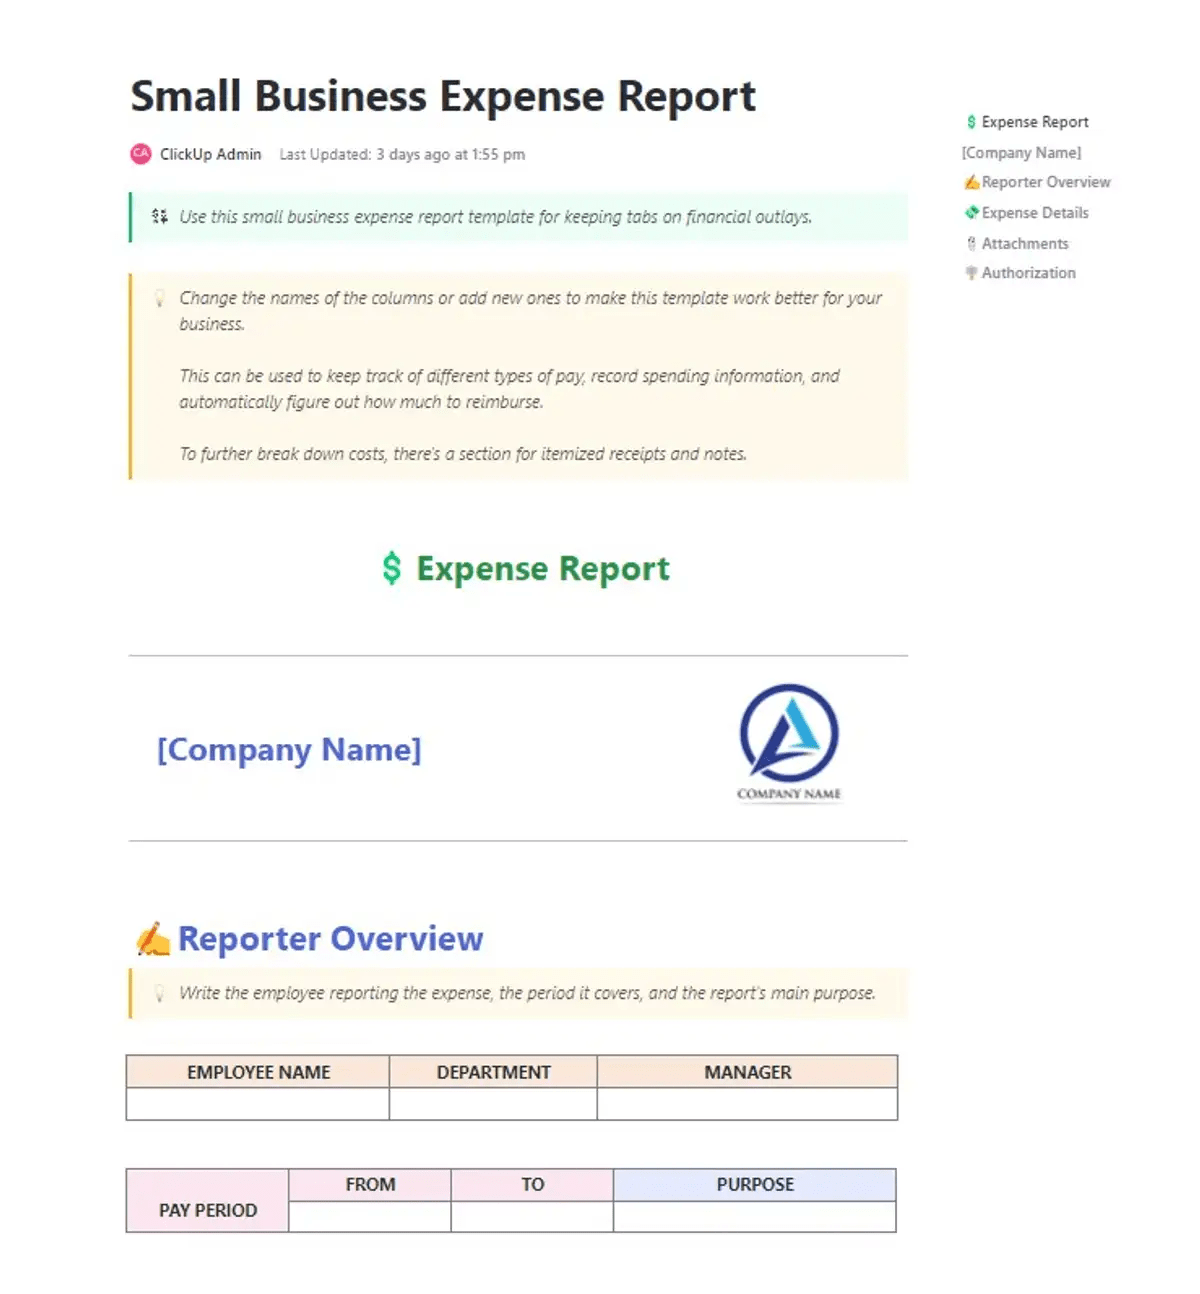 Mantenha o controle de todas as despesas de sua pequena empresa de forma coesa e organizada com o modelo de relatório de despesas da ClickUp Small Business